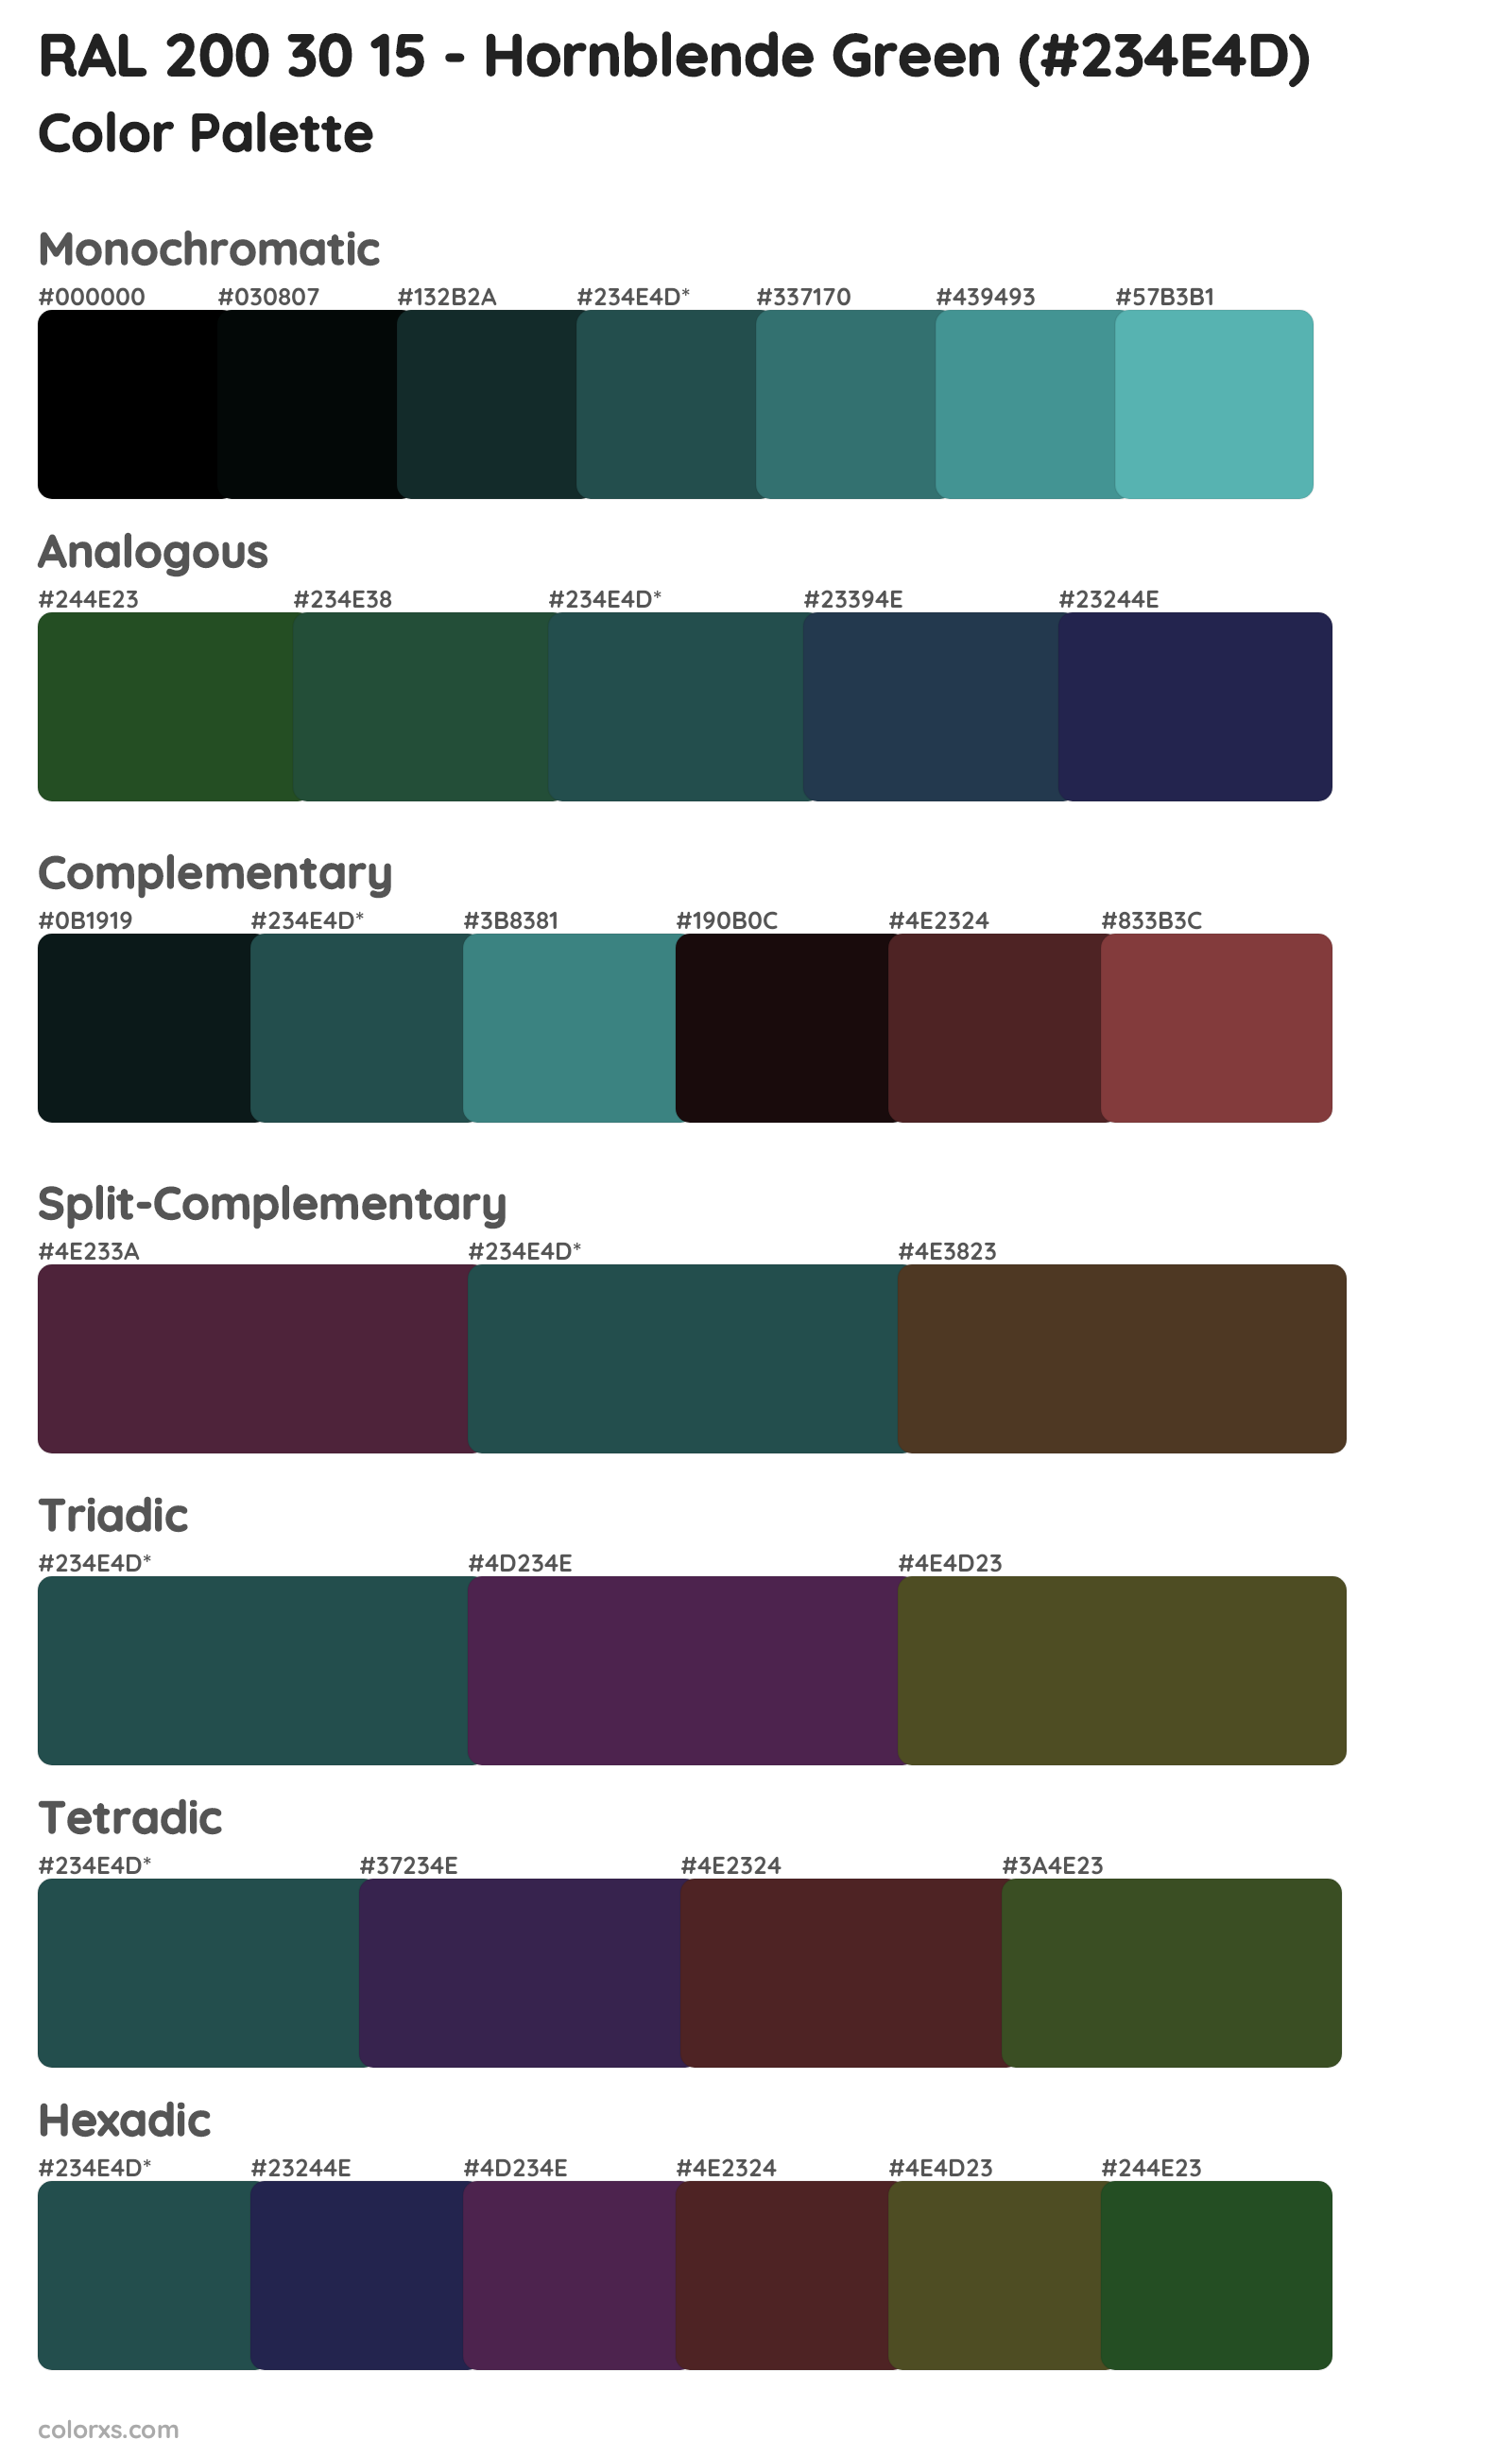 RAL 200 30 15 - Hornblende Green Color Scheme Palettes